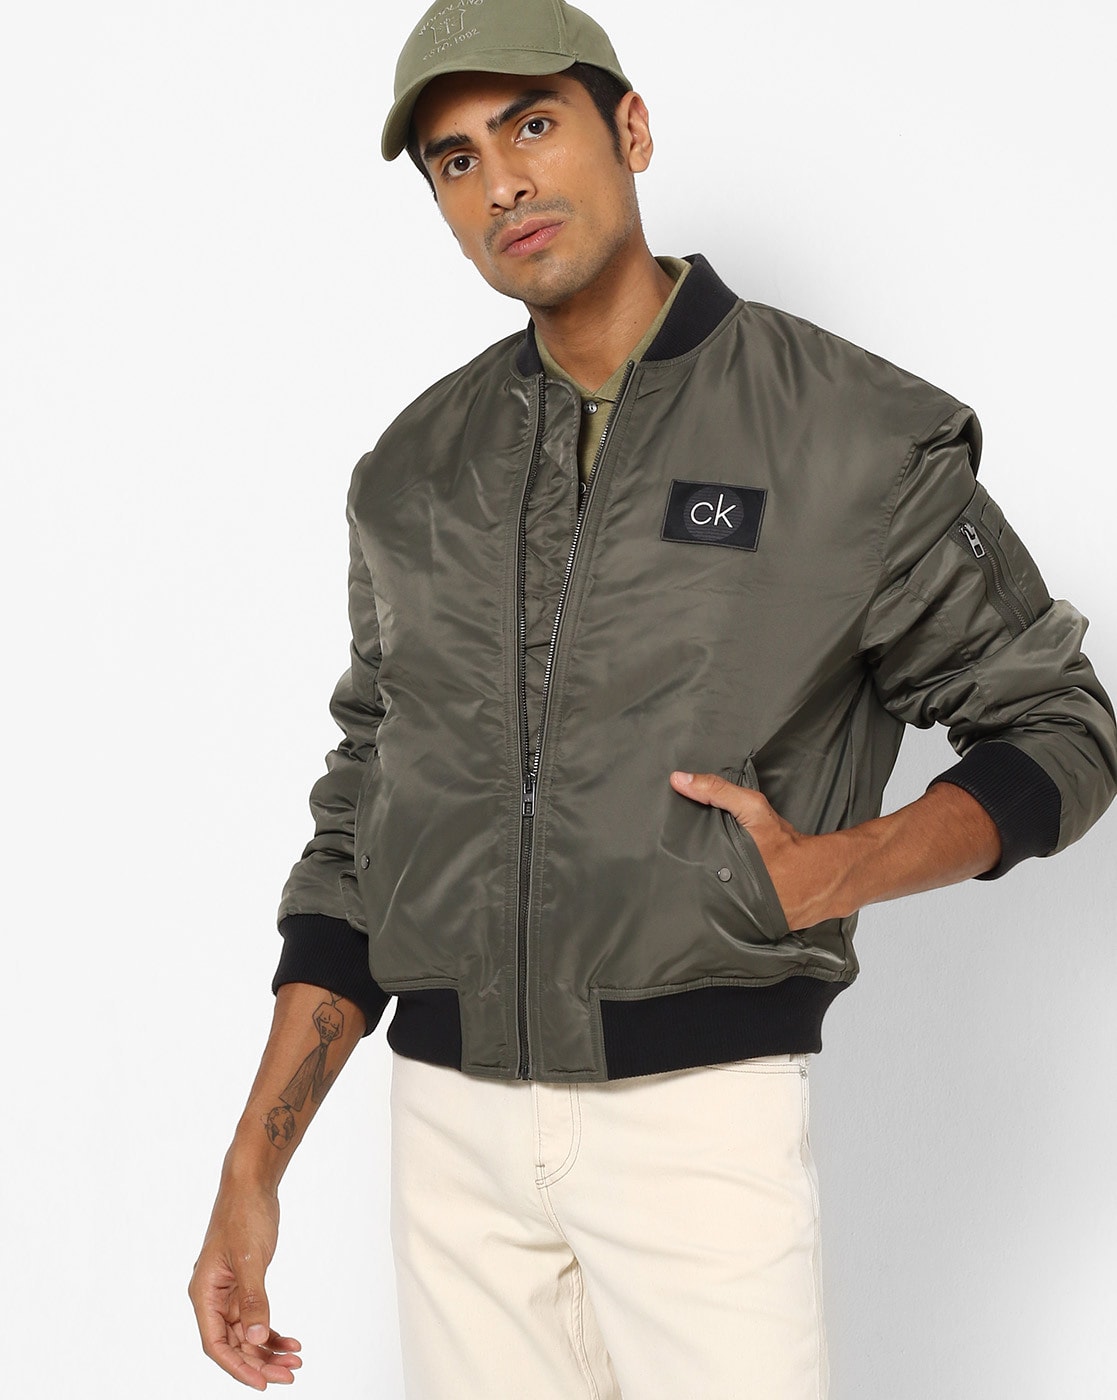 ck jackets india